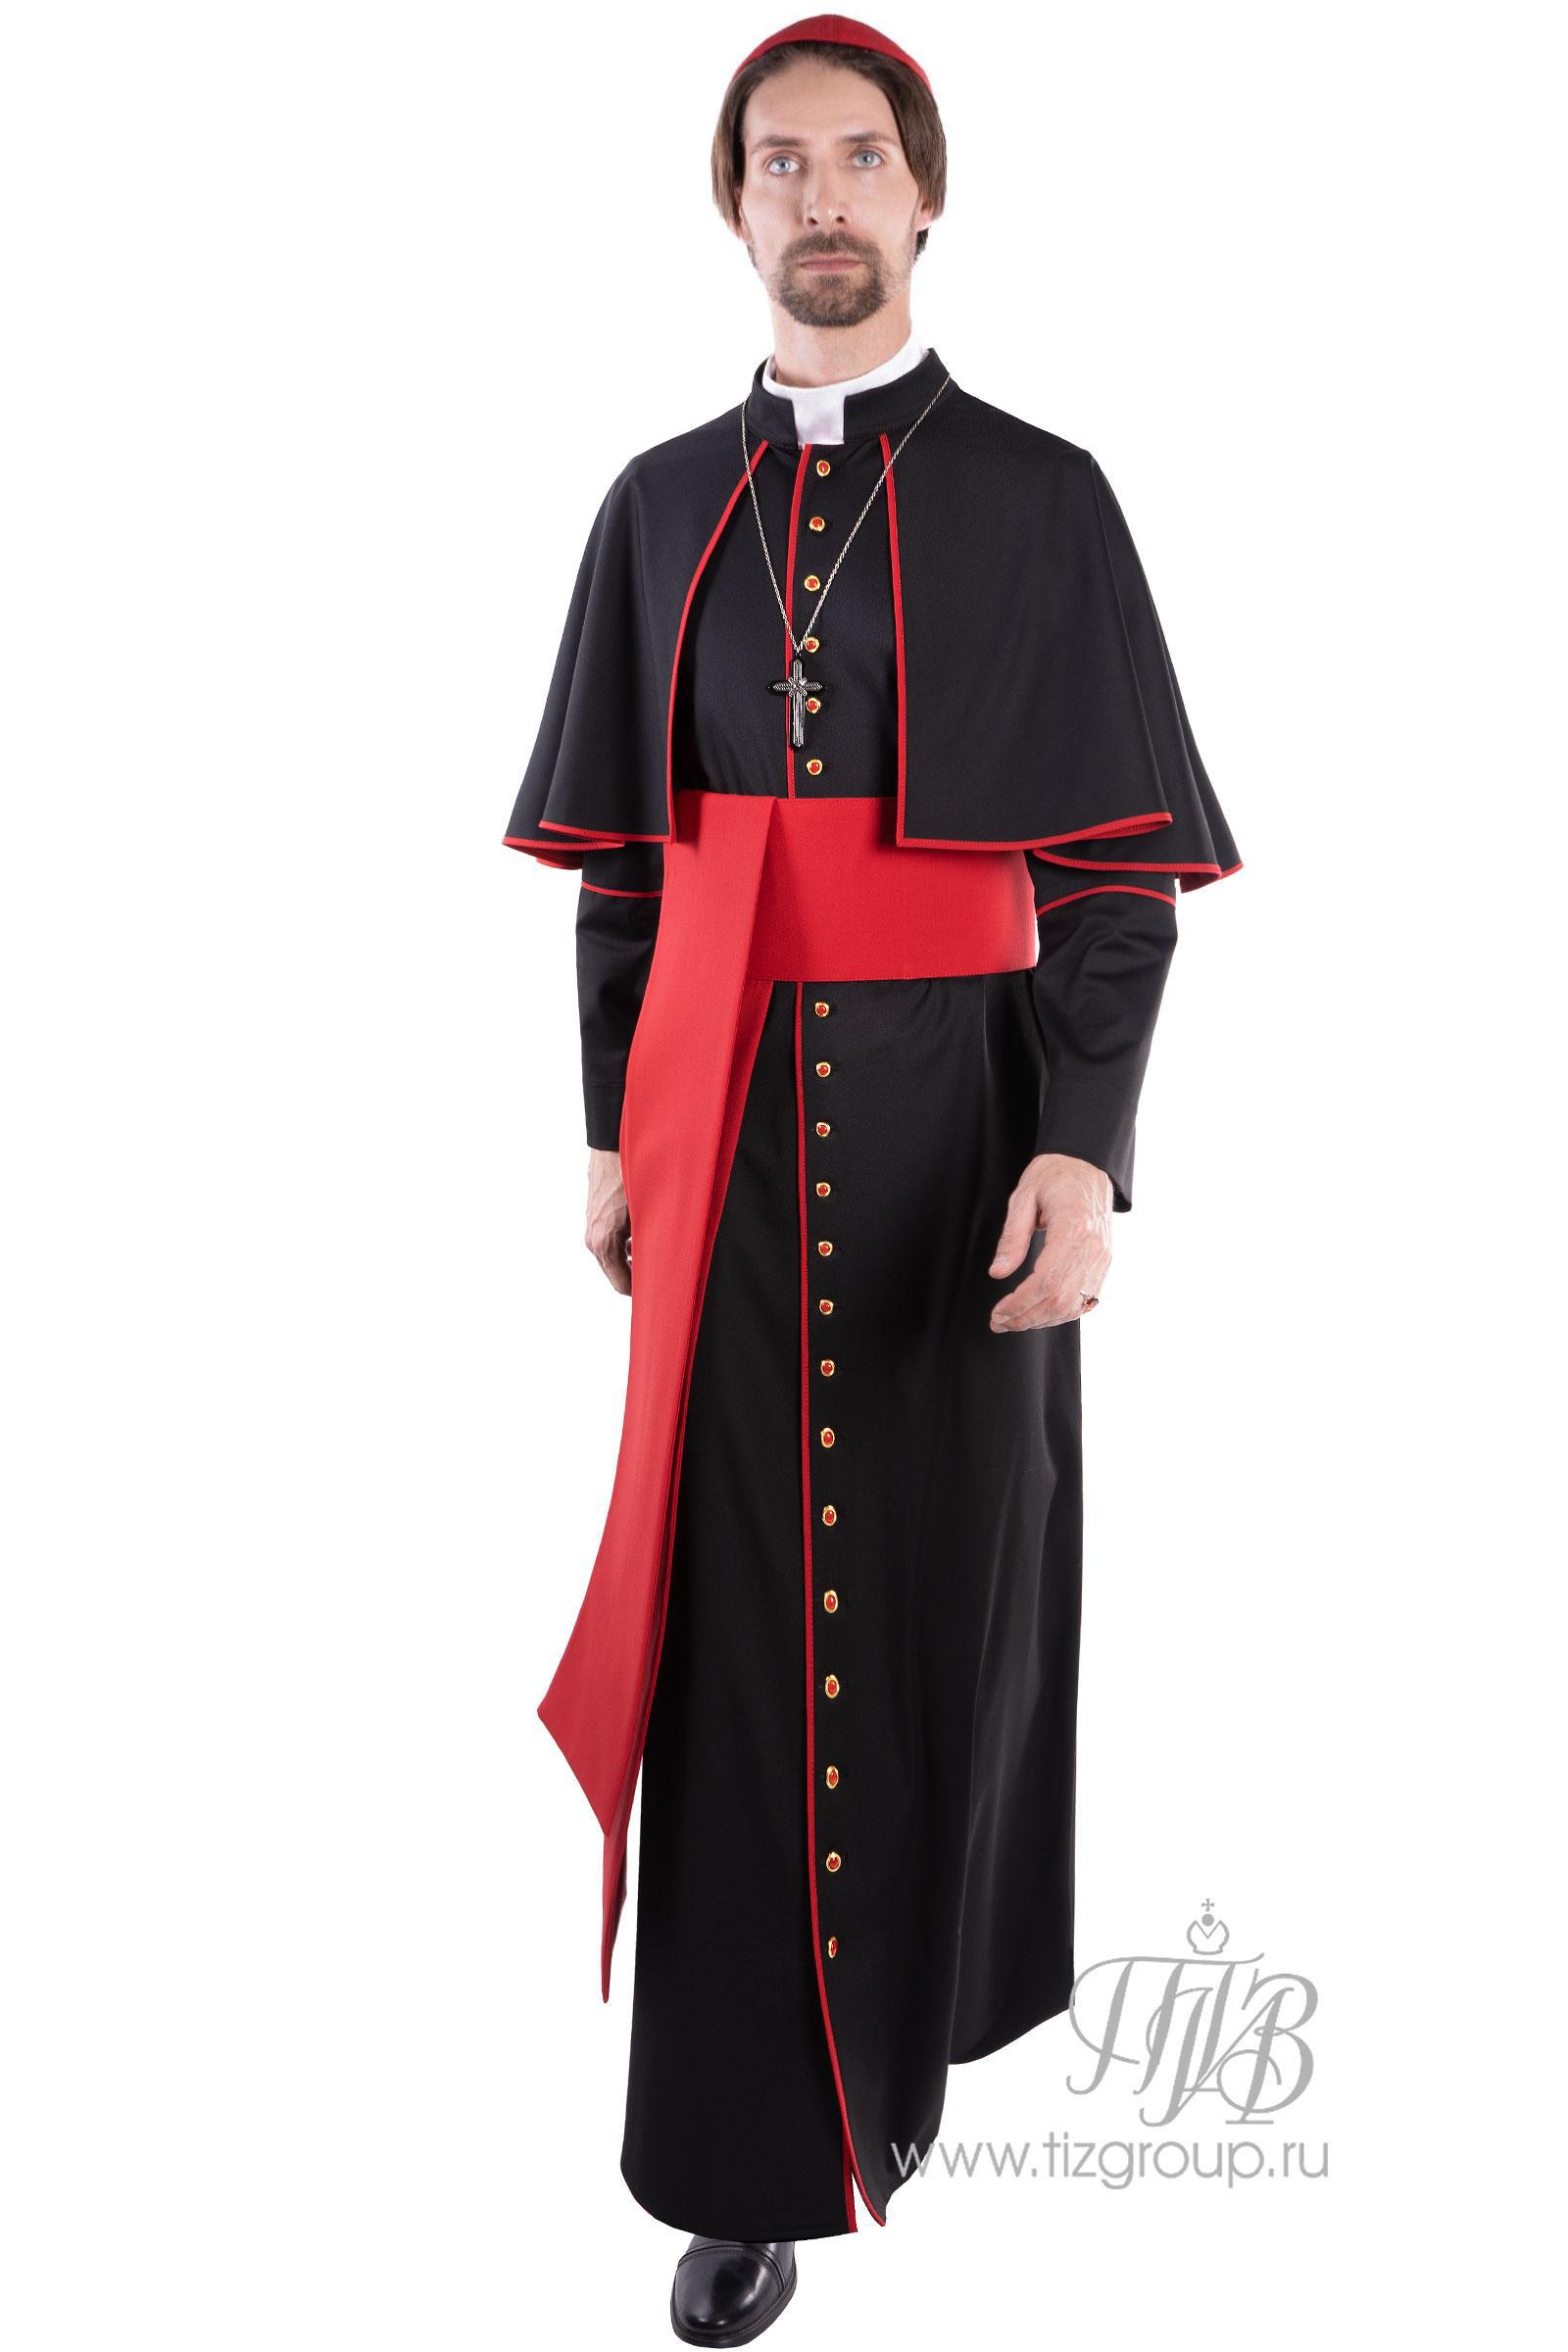 «Чем отличается официальная одежда католических священников от протестантских?» — Яндекс Кью